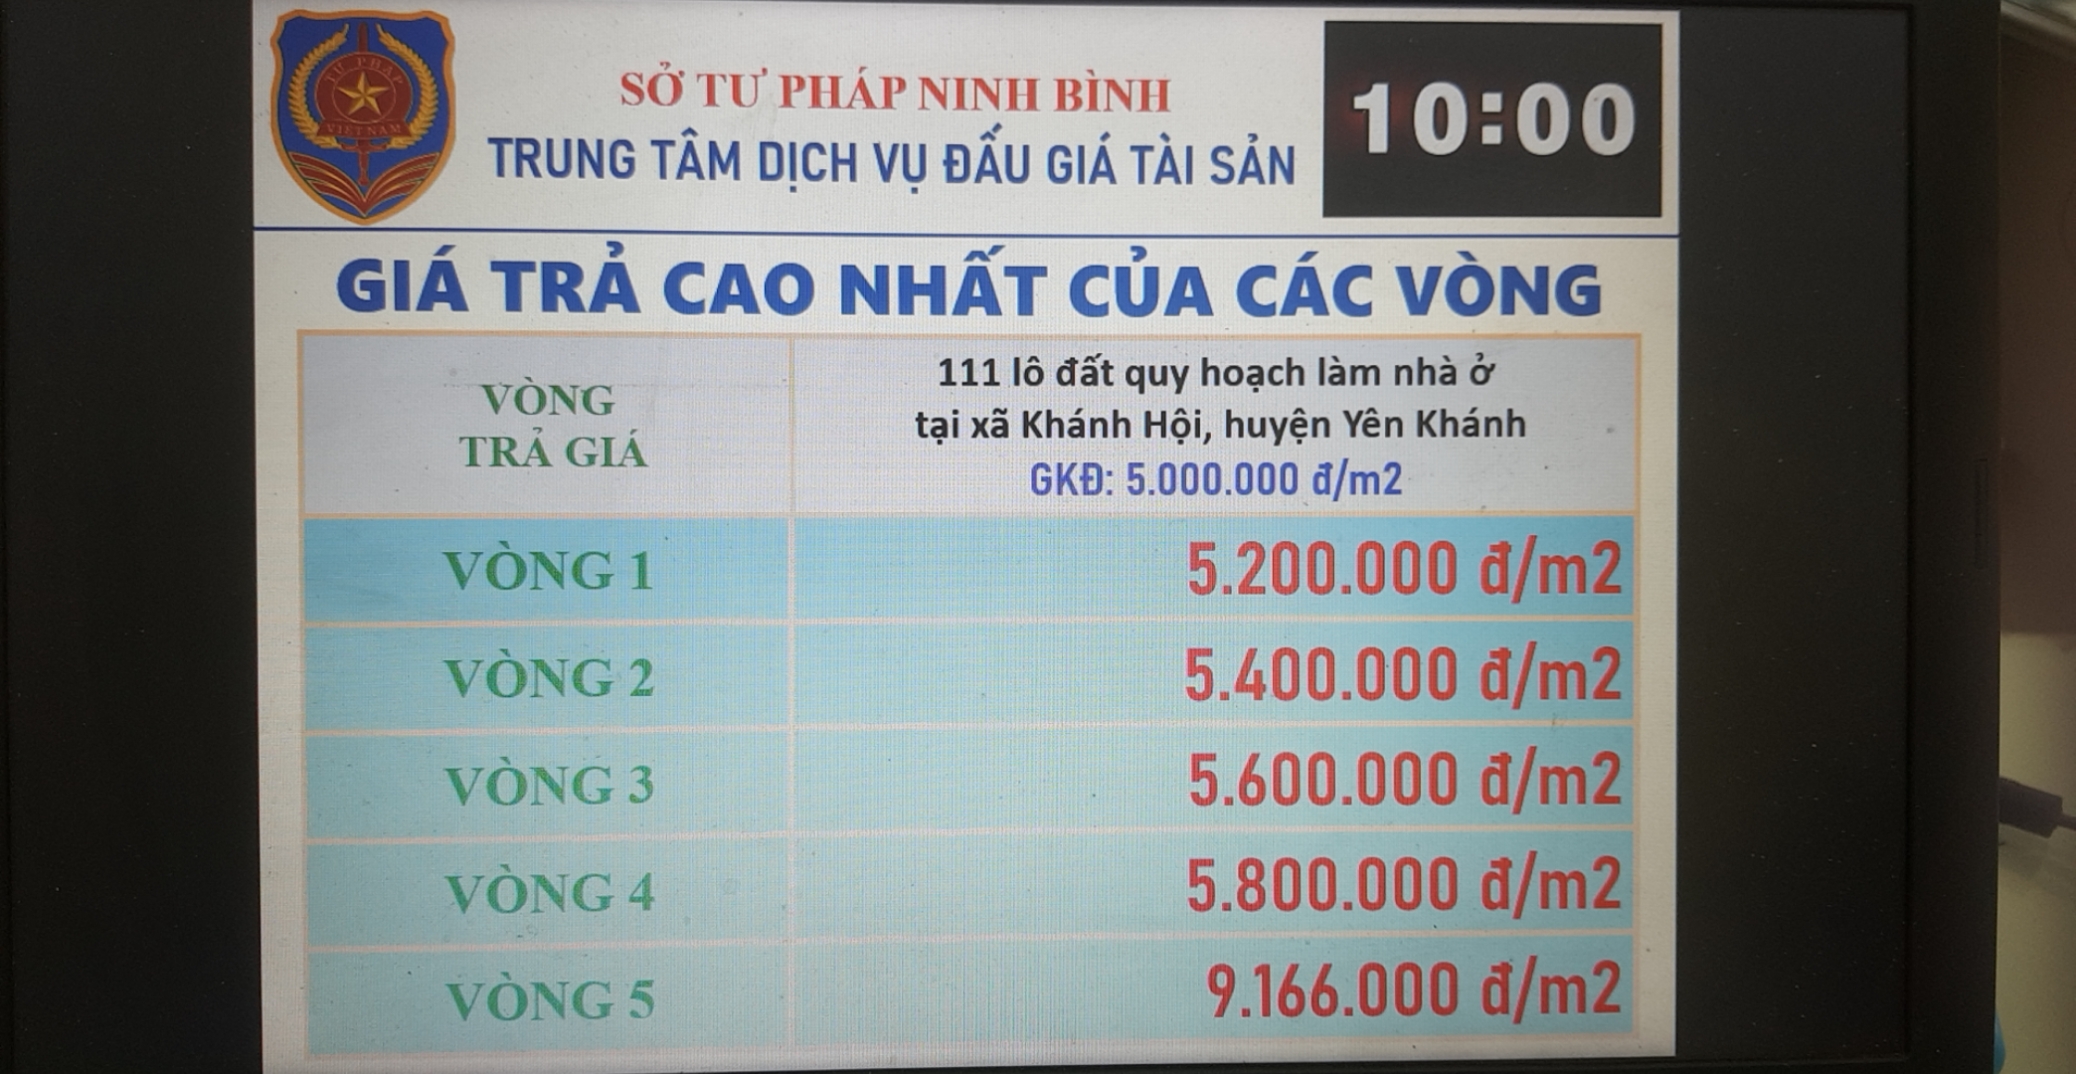 Kết quả đấu giá quyền sử dụng 111 lô đất tại xã Khánh Hội, huyện Yên Khánh, tỉnh Ninh Bình